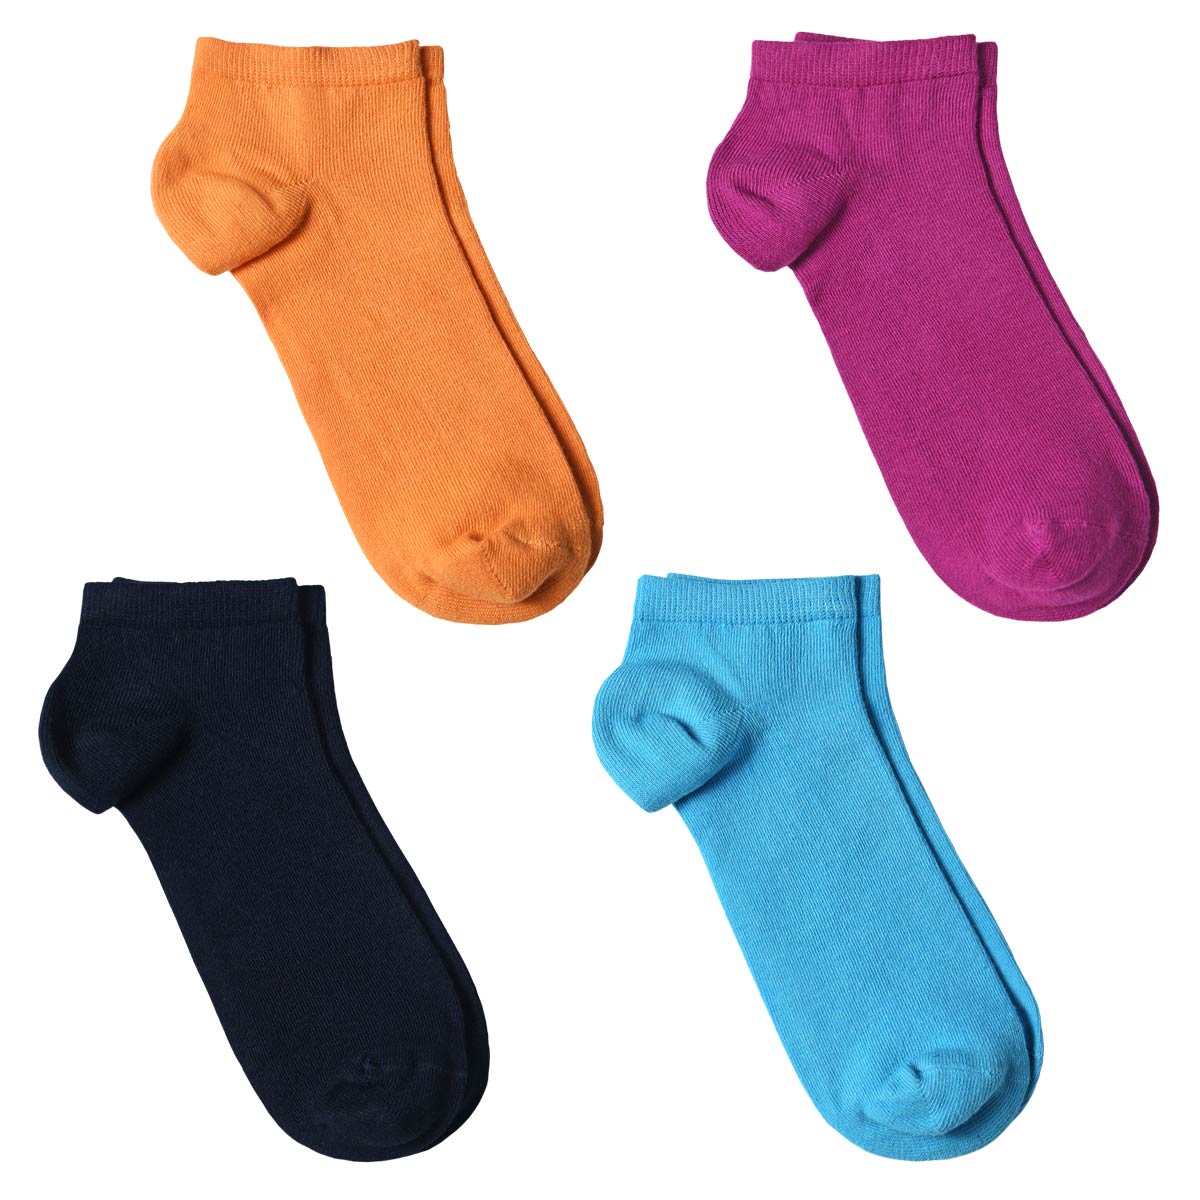 Socquettes Femme coton - 4 paires Multicolores